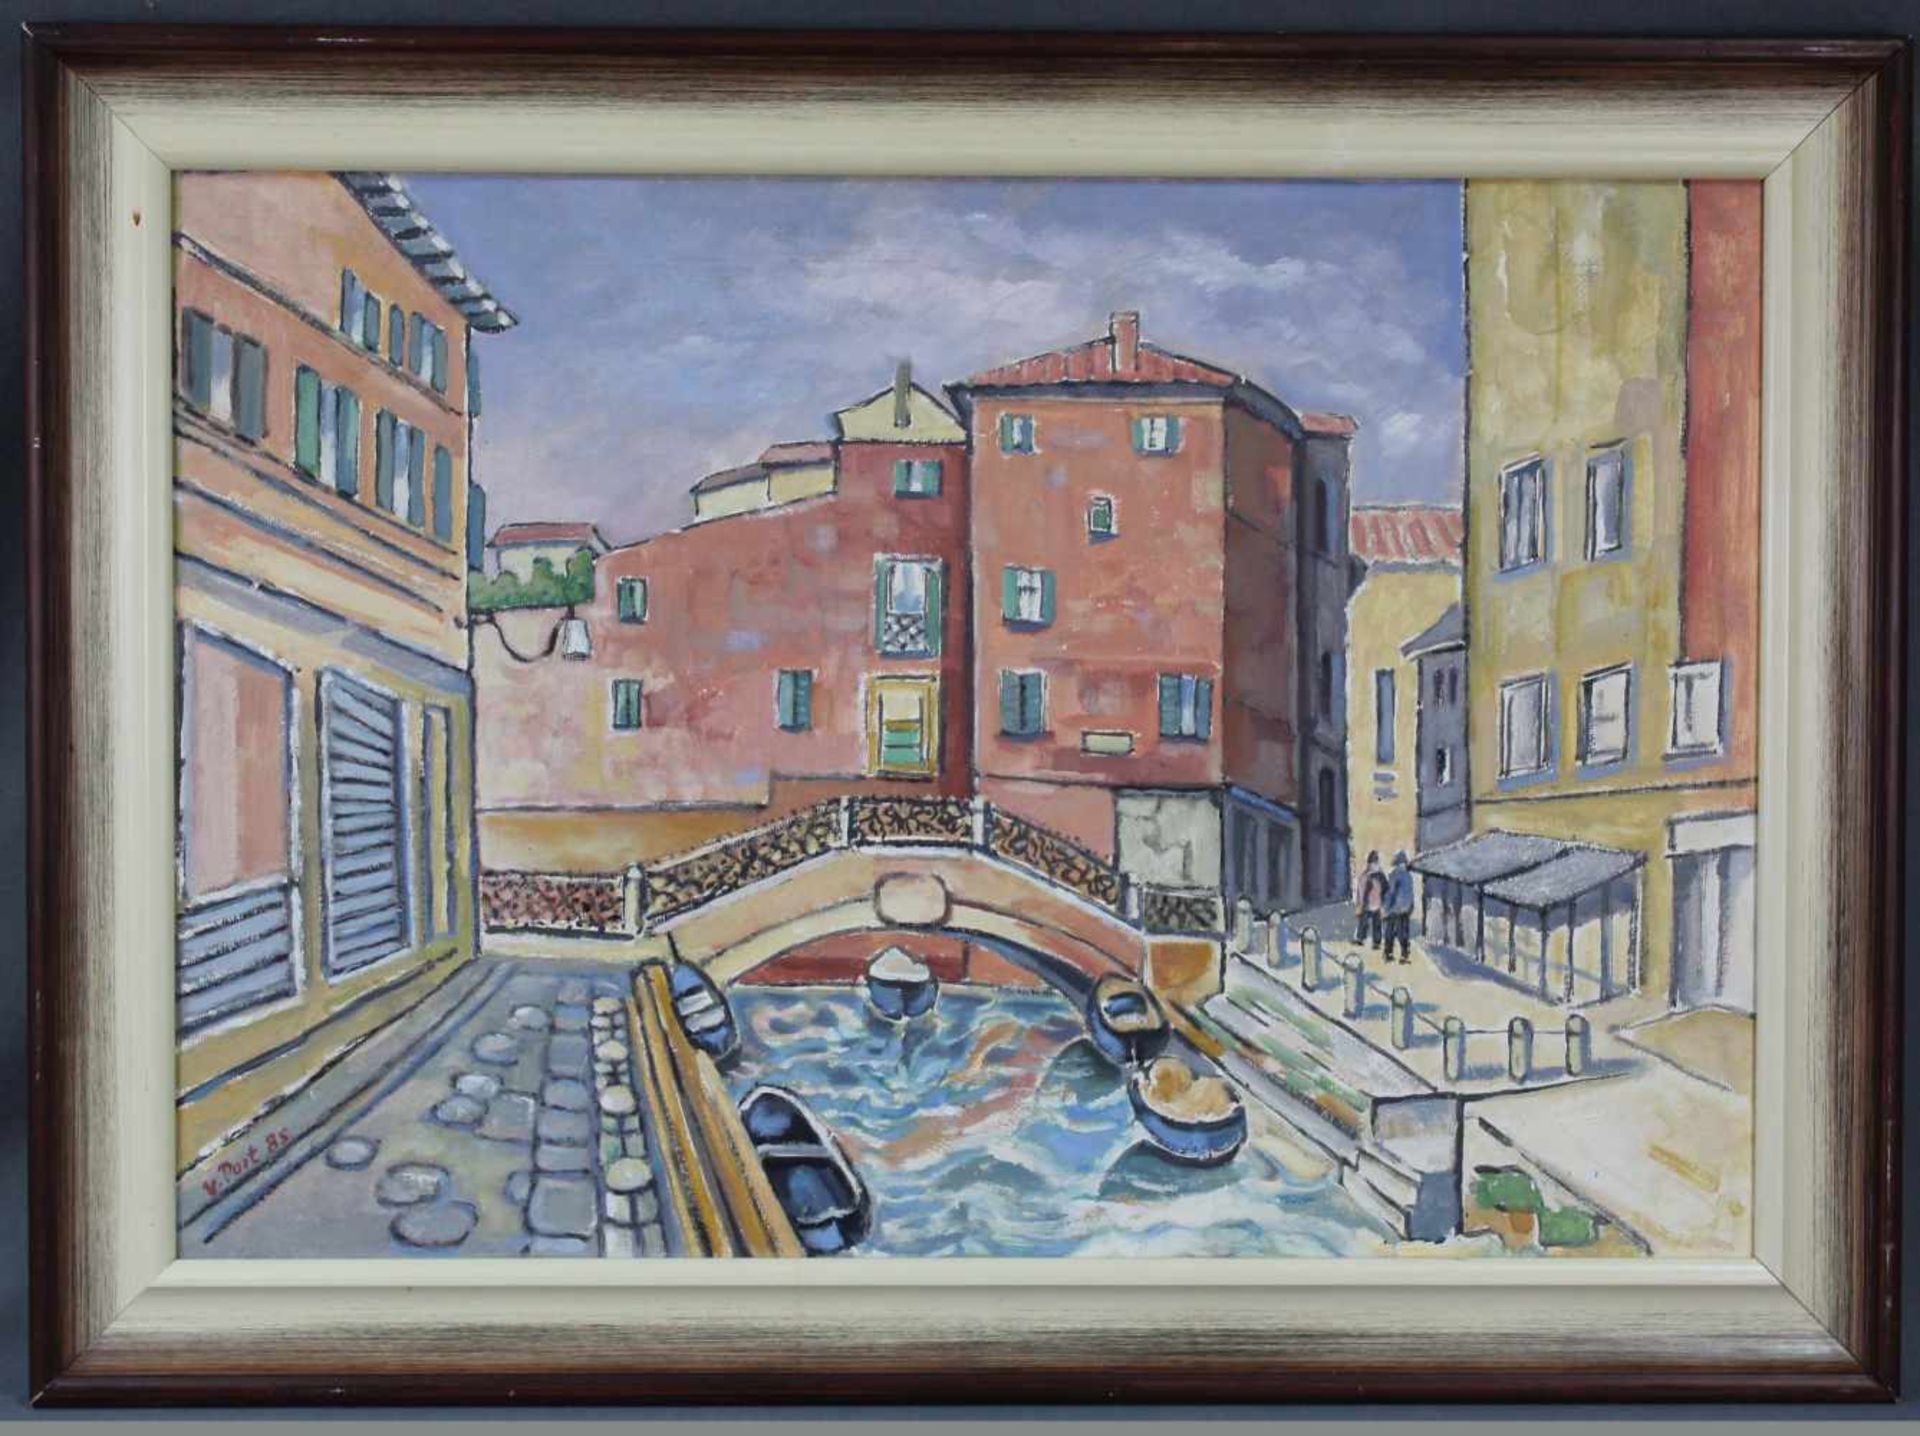 Willi POST (1912 - 1990). Calle in Venedig, Italien. 1985.53 cm x 78 cm. Gemälde. Öl auf Platte. - Image 2 of 6